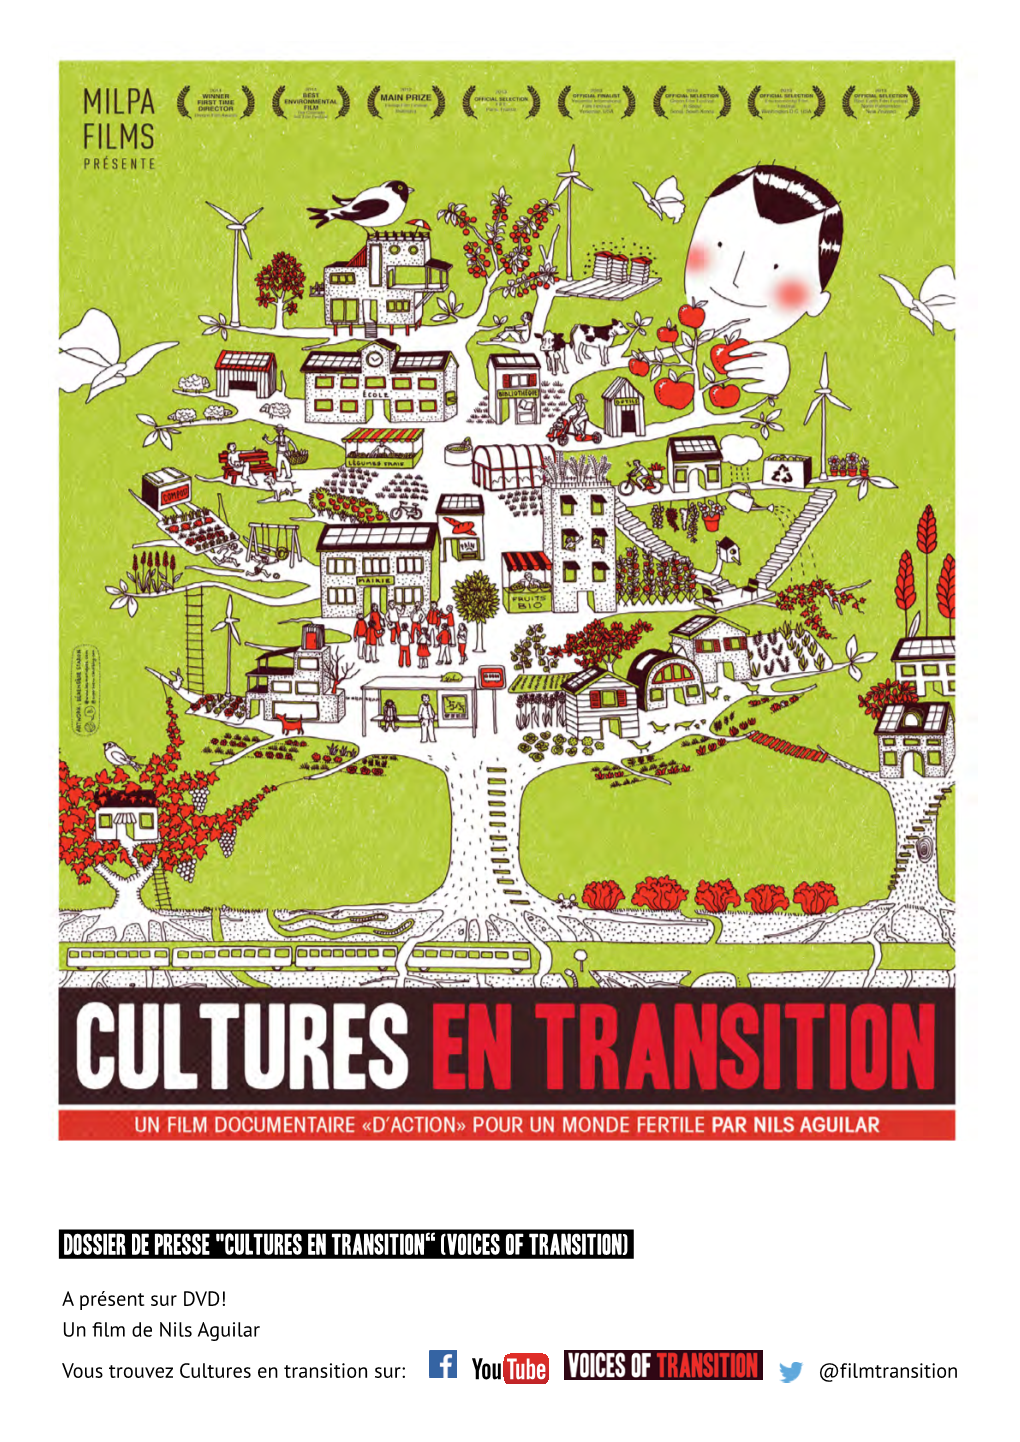 DOSSIER DE PRESSE "Cultures En Transition“ (Voices of Transition)